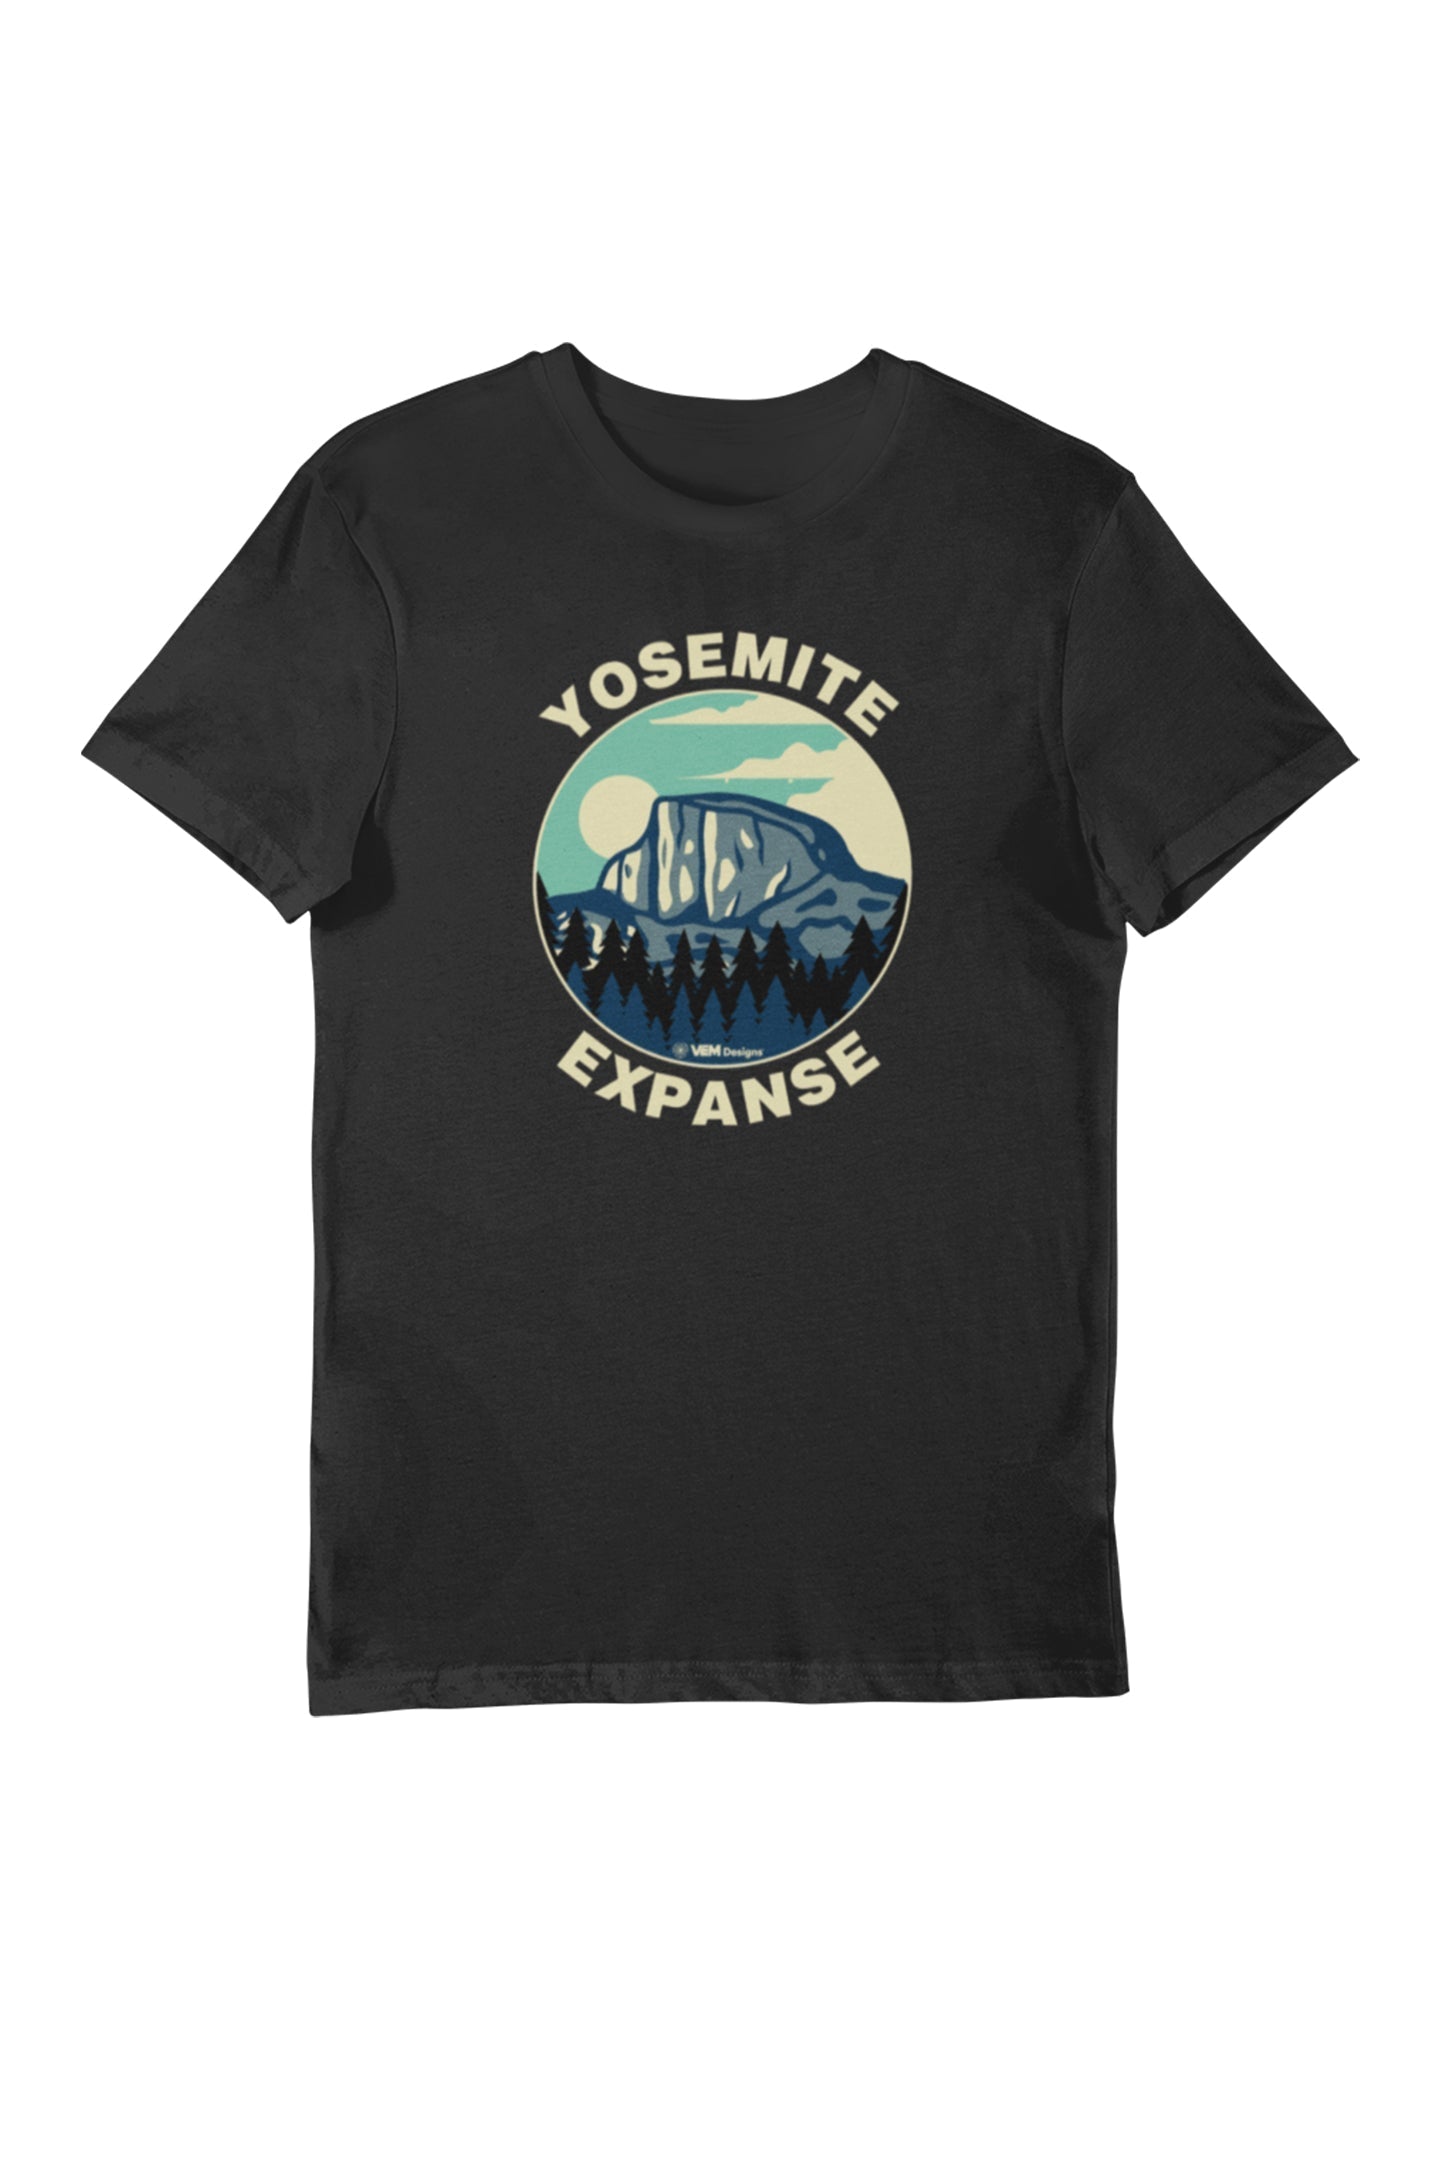 Yosemite - Women's